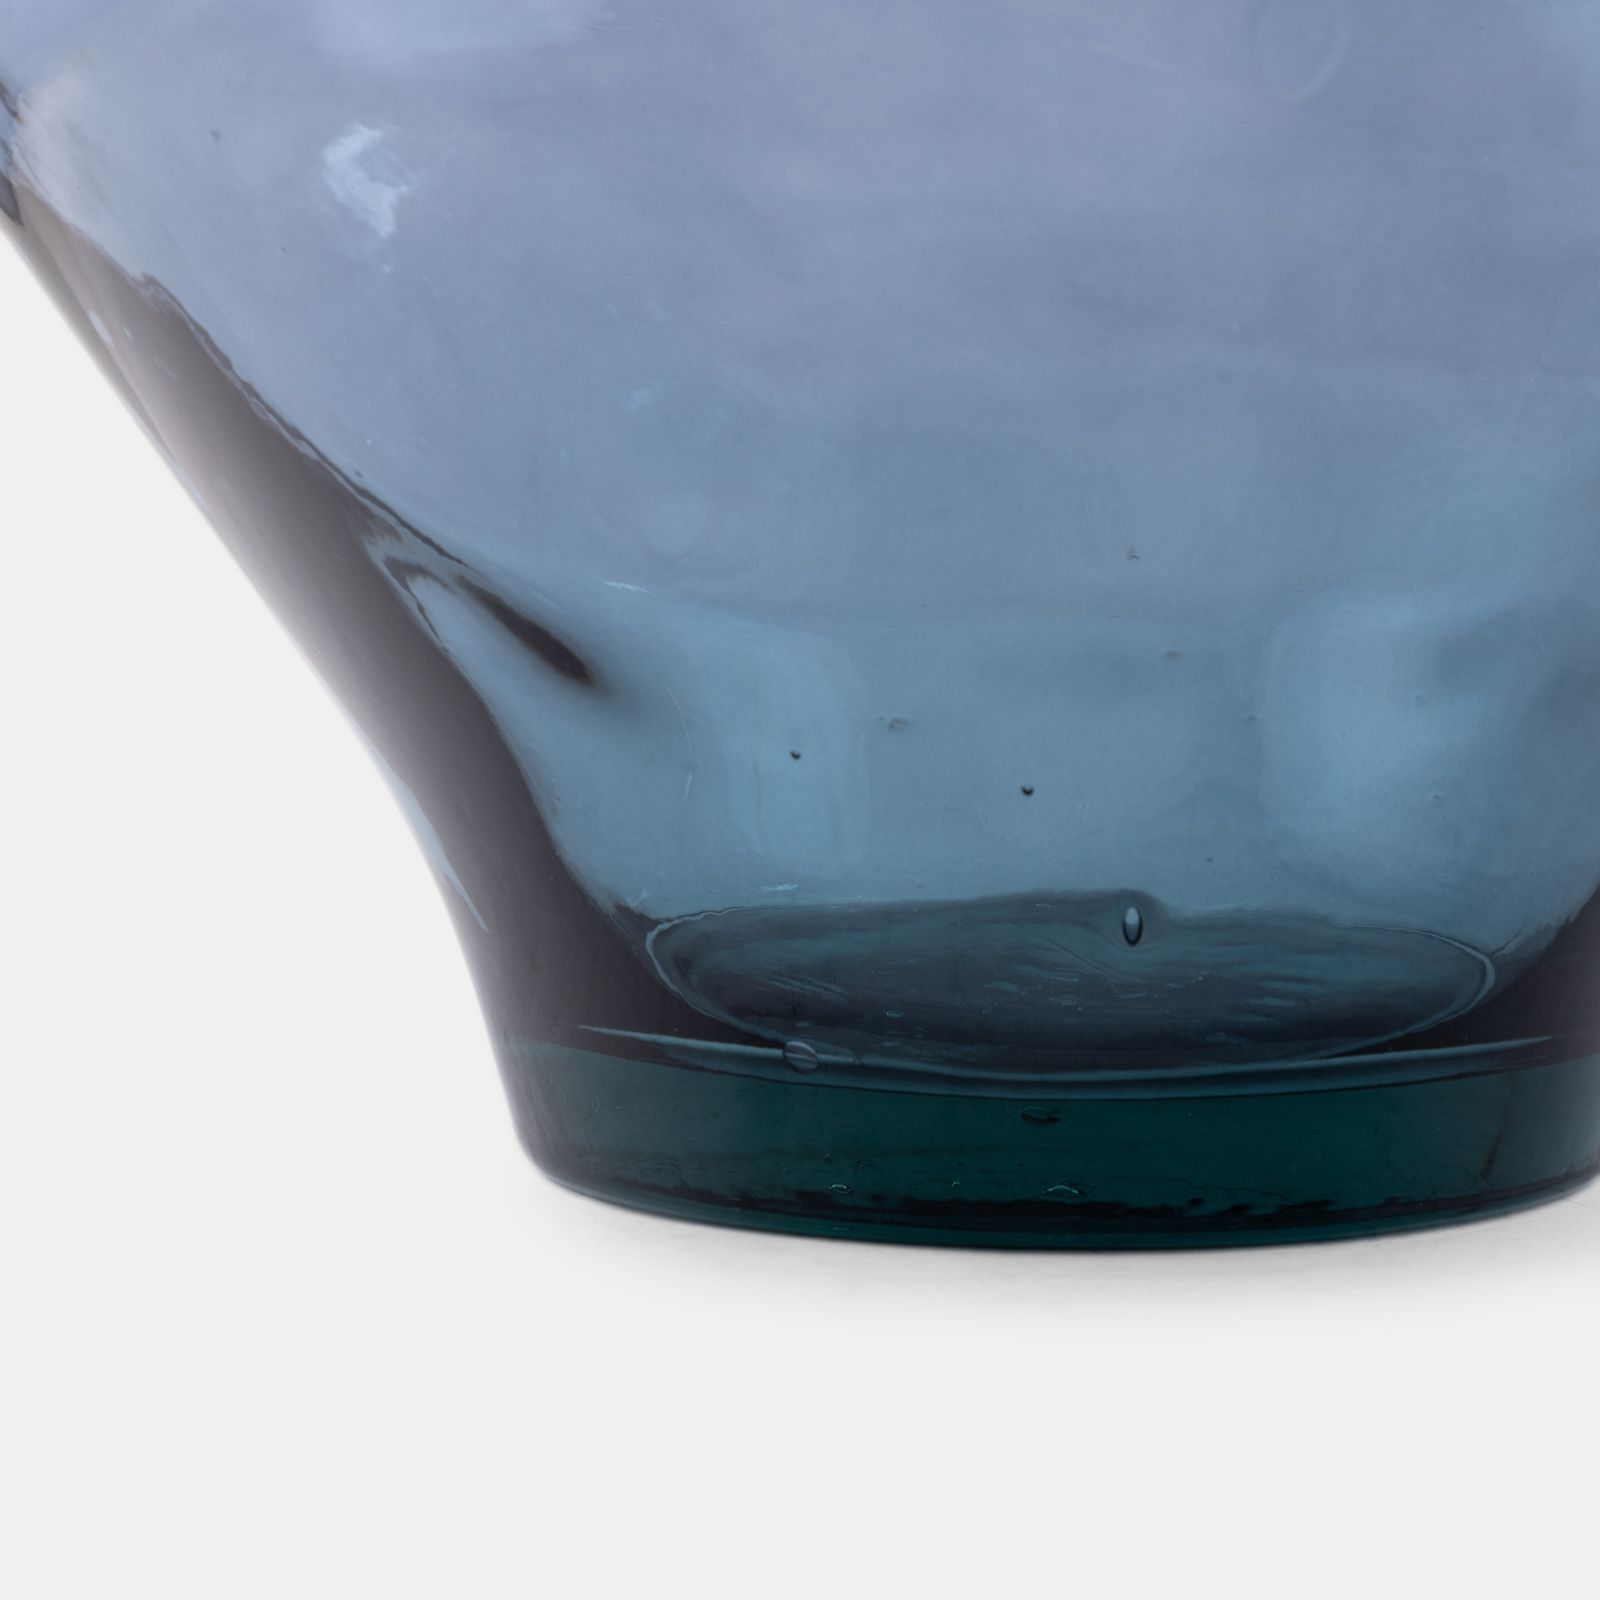 Vaso h35 cm in vetro riciclato trasparente - Bumpy